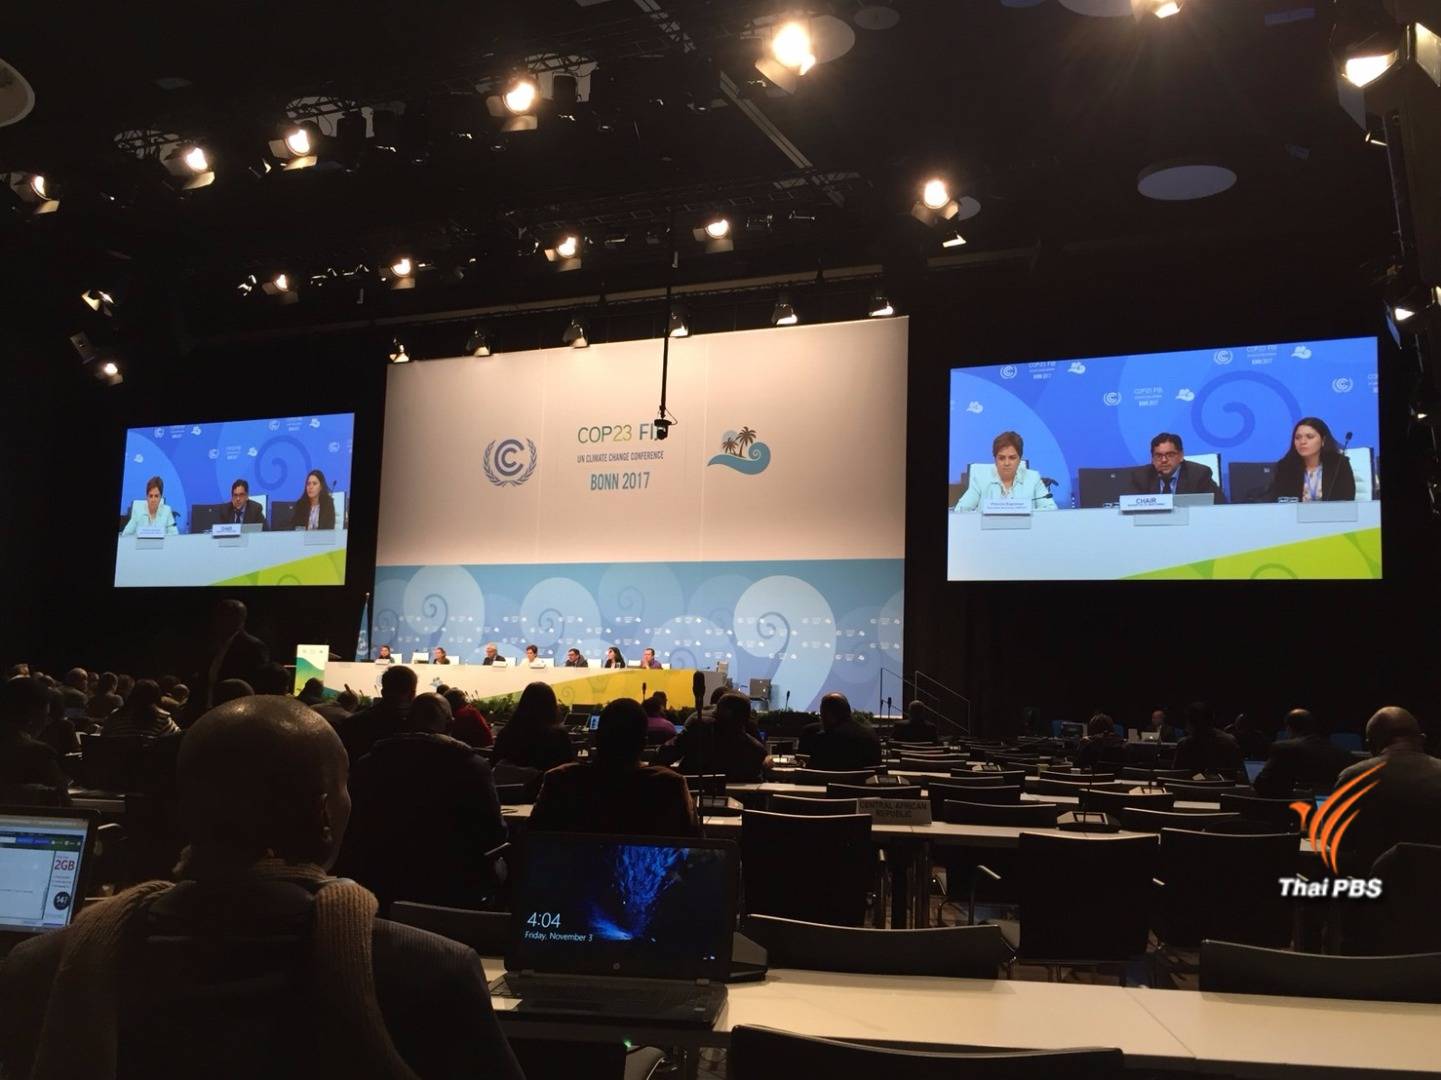 เปิดฉากประชุมโลกร้อน COP 23 ลุ้นบรรลุกรอบความตกลงปารีส 